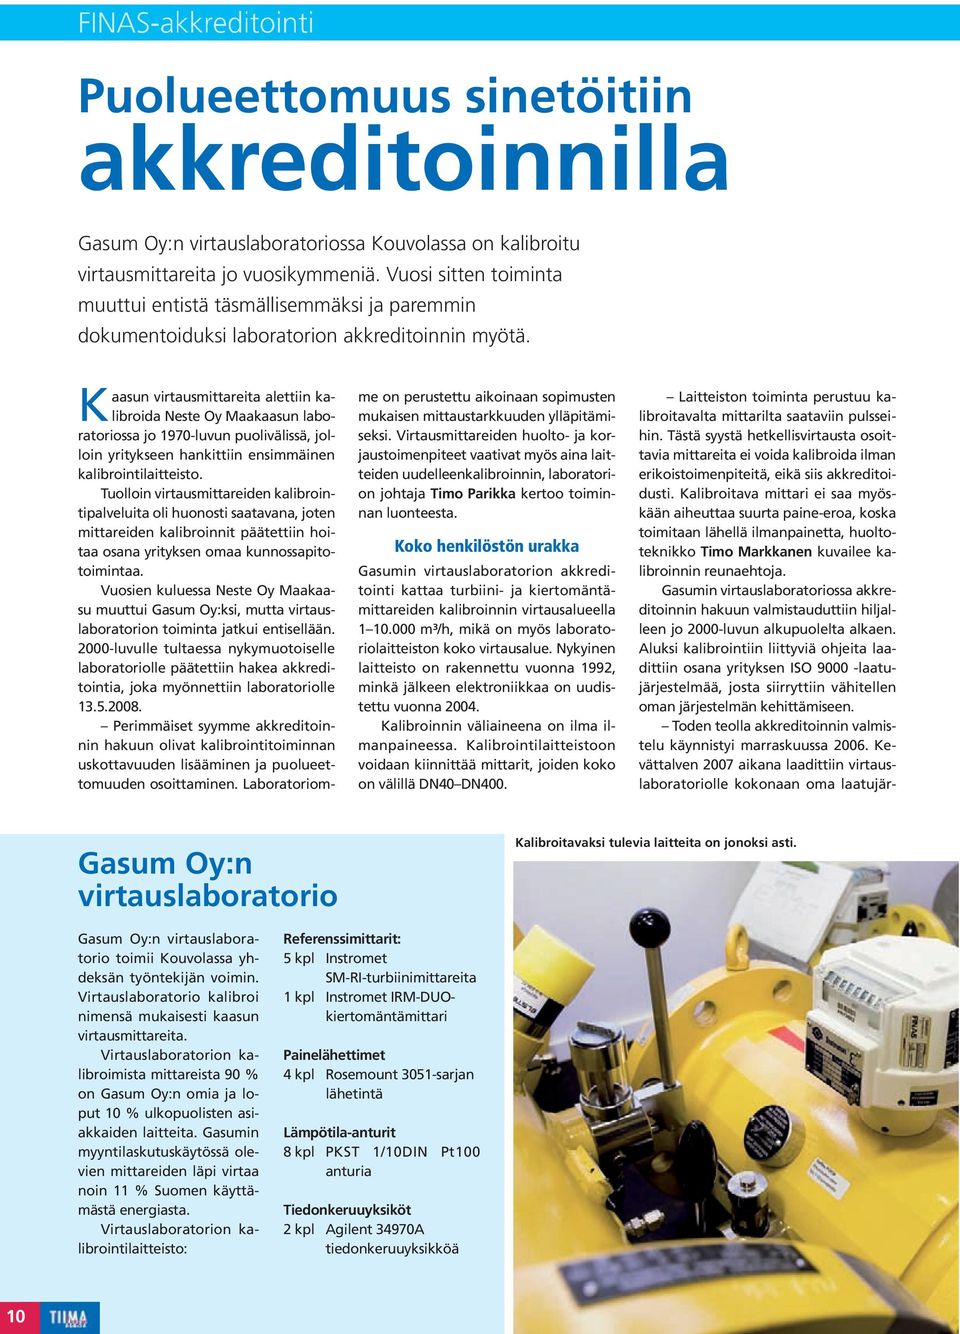 Kaasun virtausmittareita alettiin kalibroida Neste Oy Maakaasun laboratoriossa jo 1970-luvun puolivälissä, jolloin yritykseen hankittiin ensimmäinen kalibrointilaitteisto.